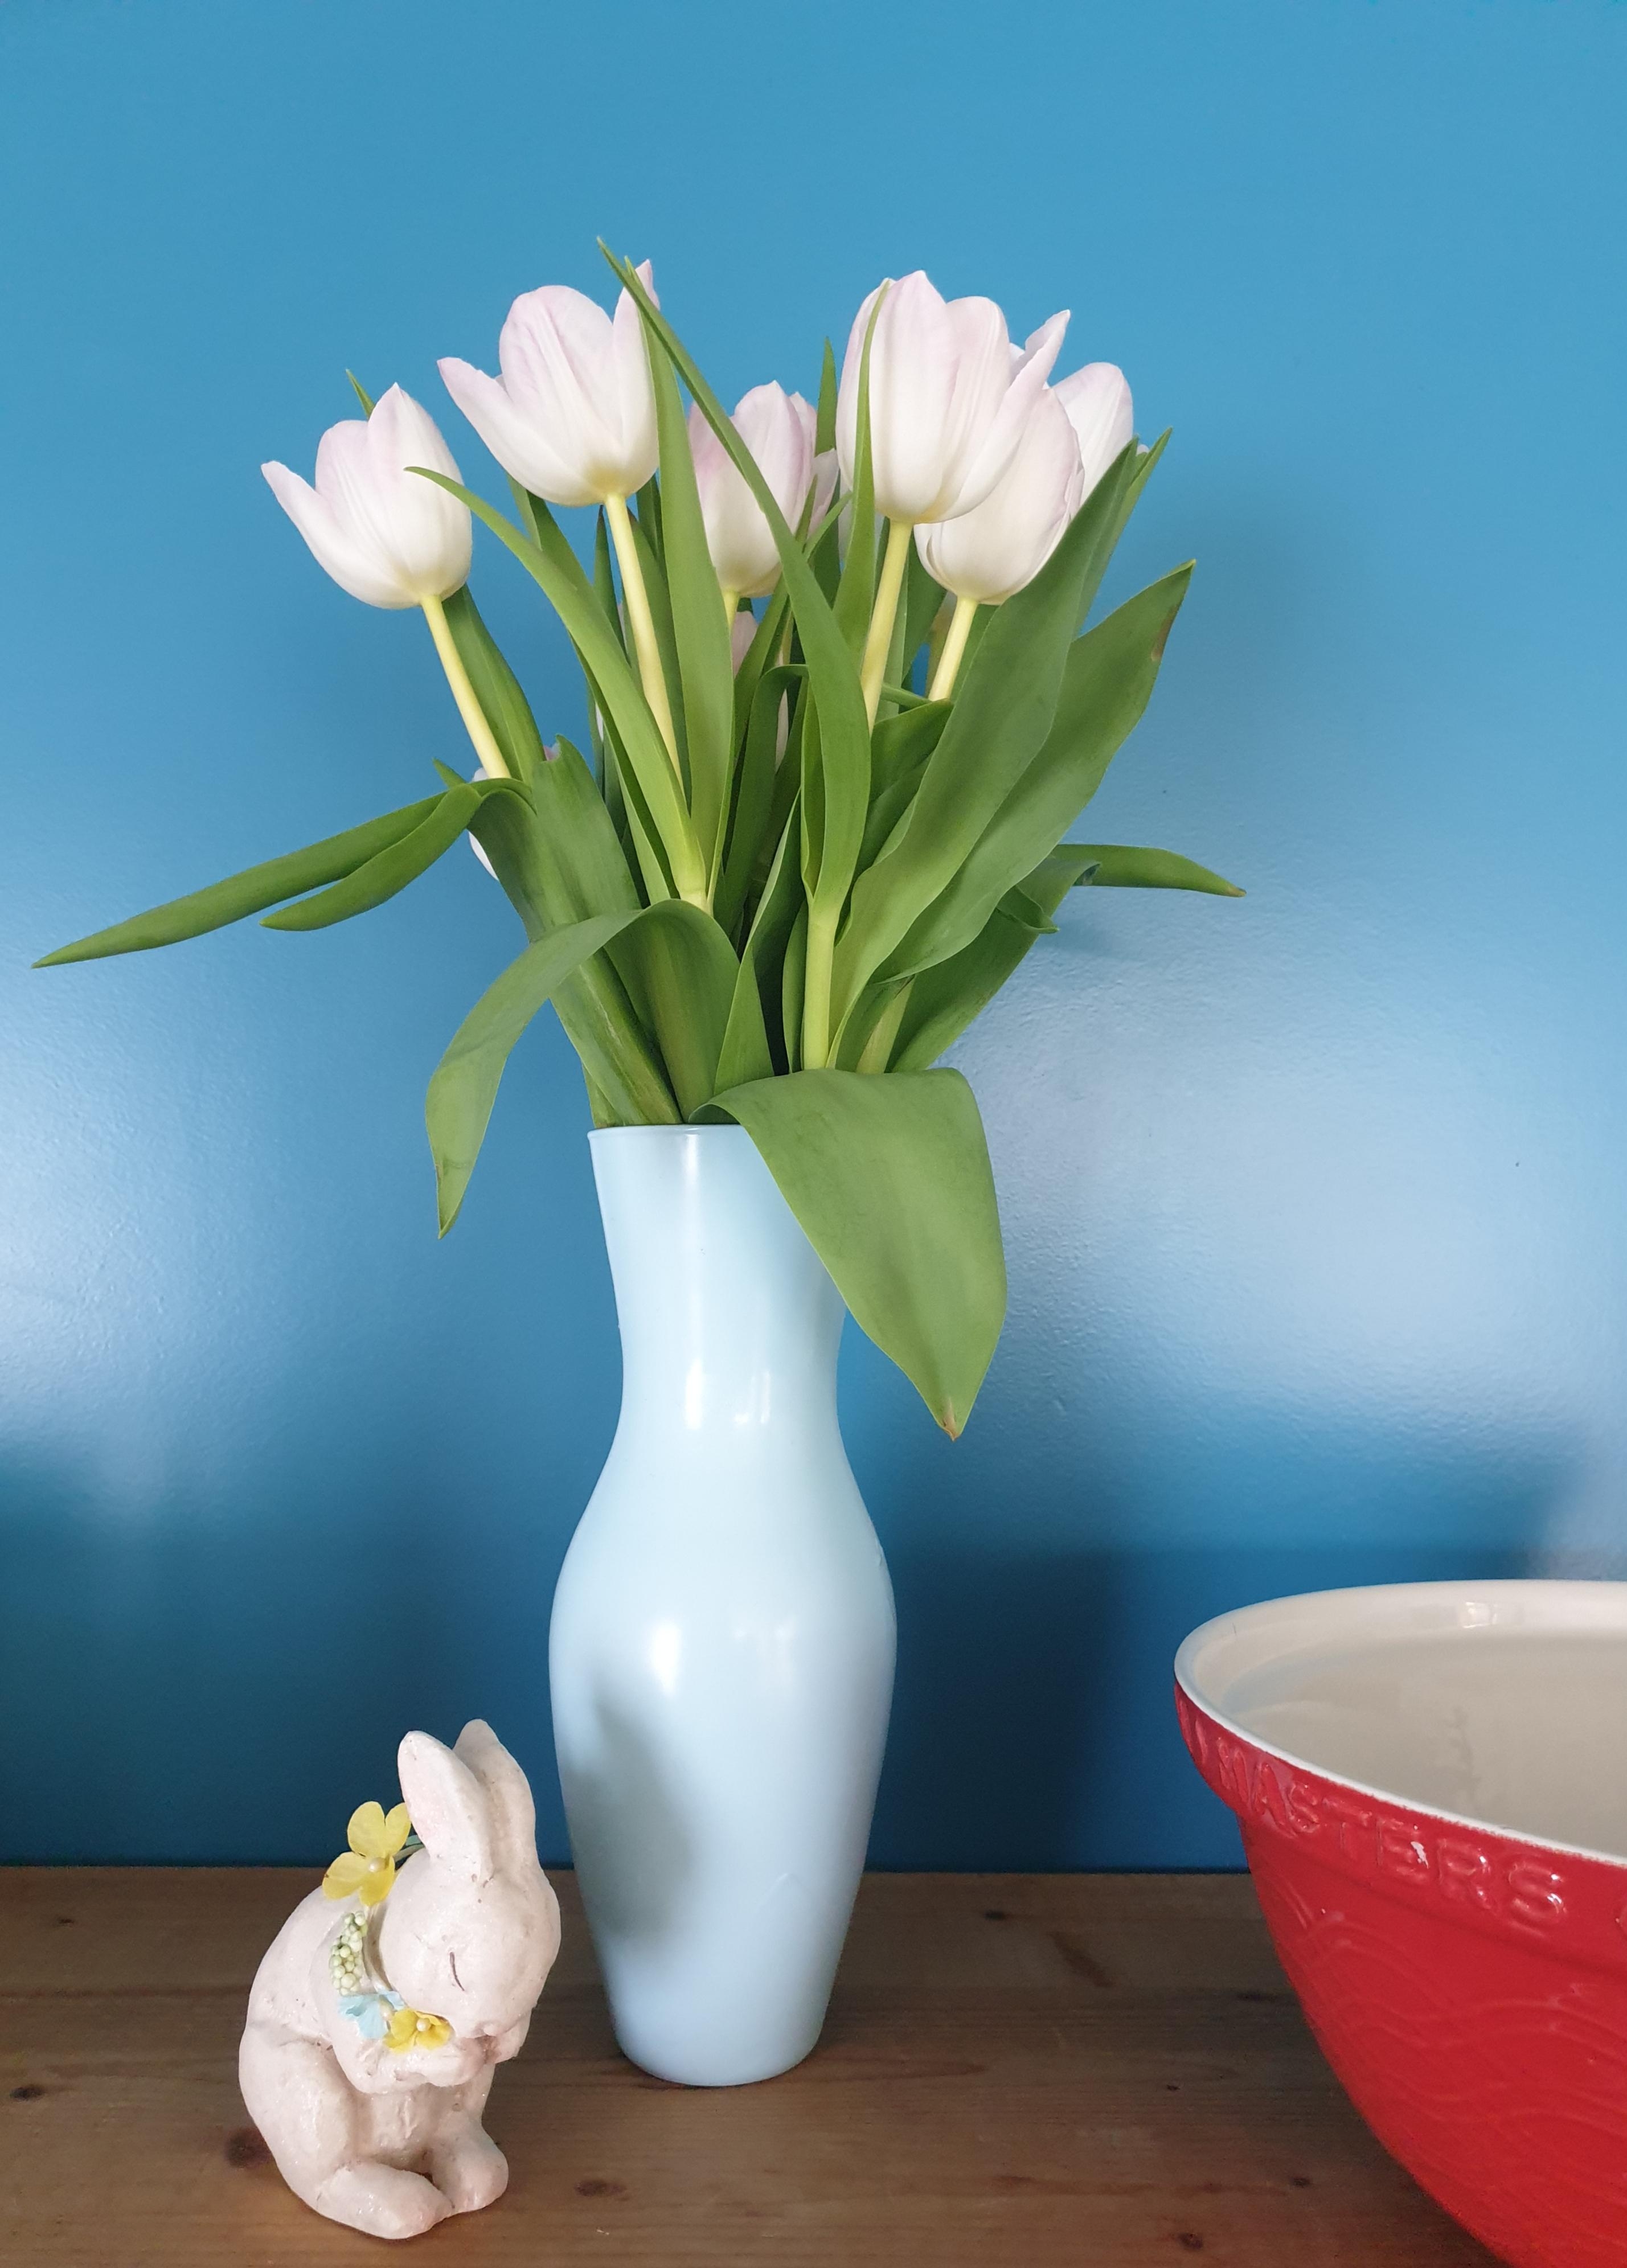 In the kitchen....Freude an den schönen Tulpen
#Vase#Blumen#Frühling#Regal#Küche